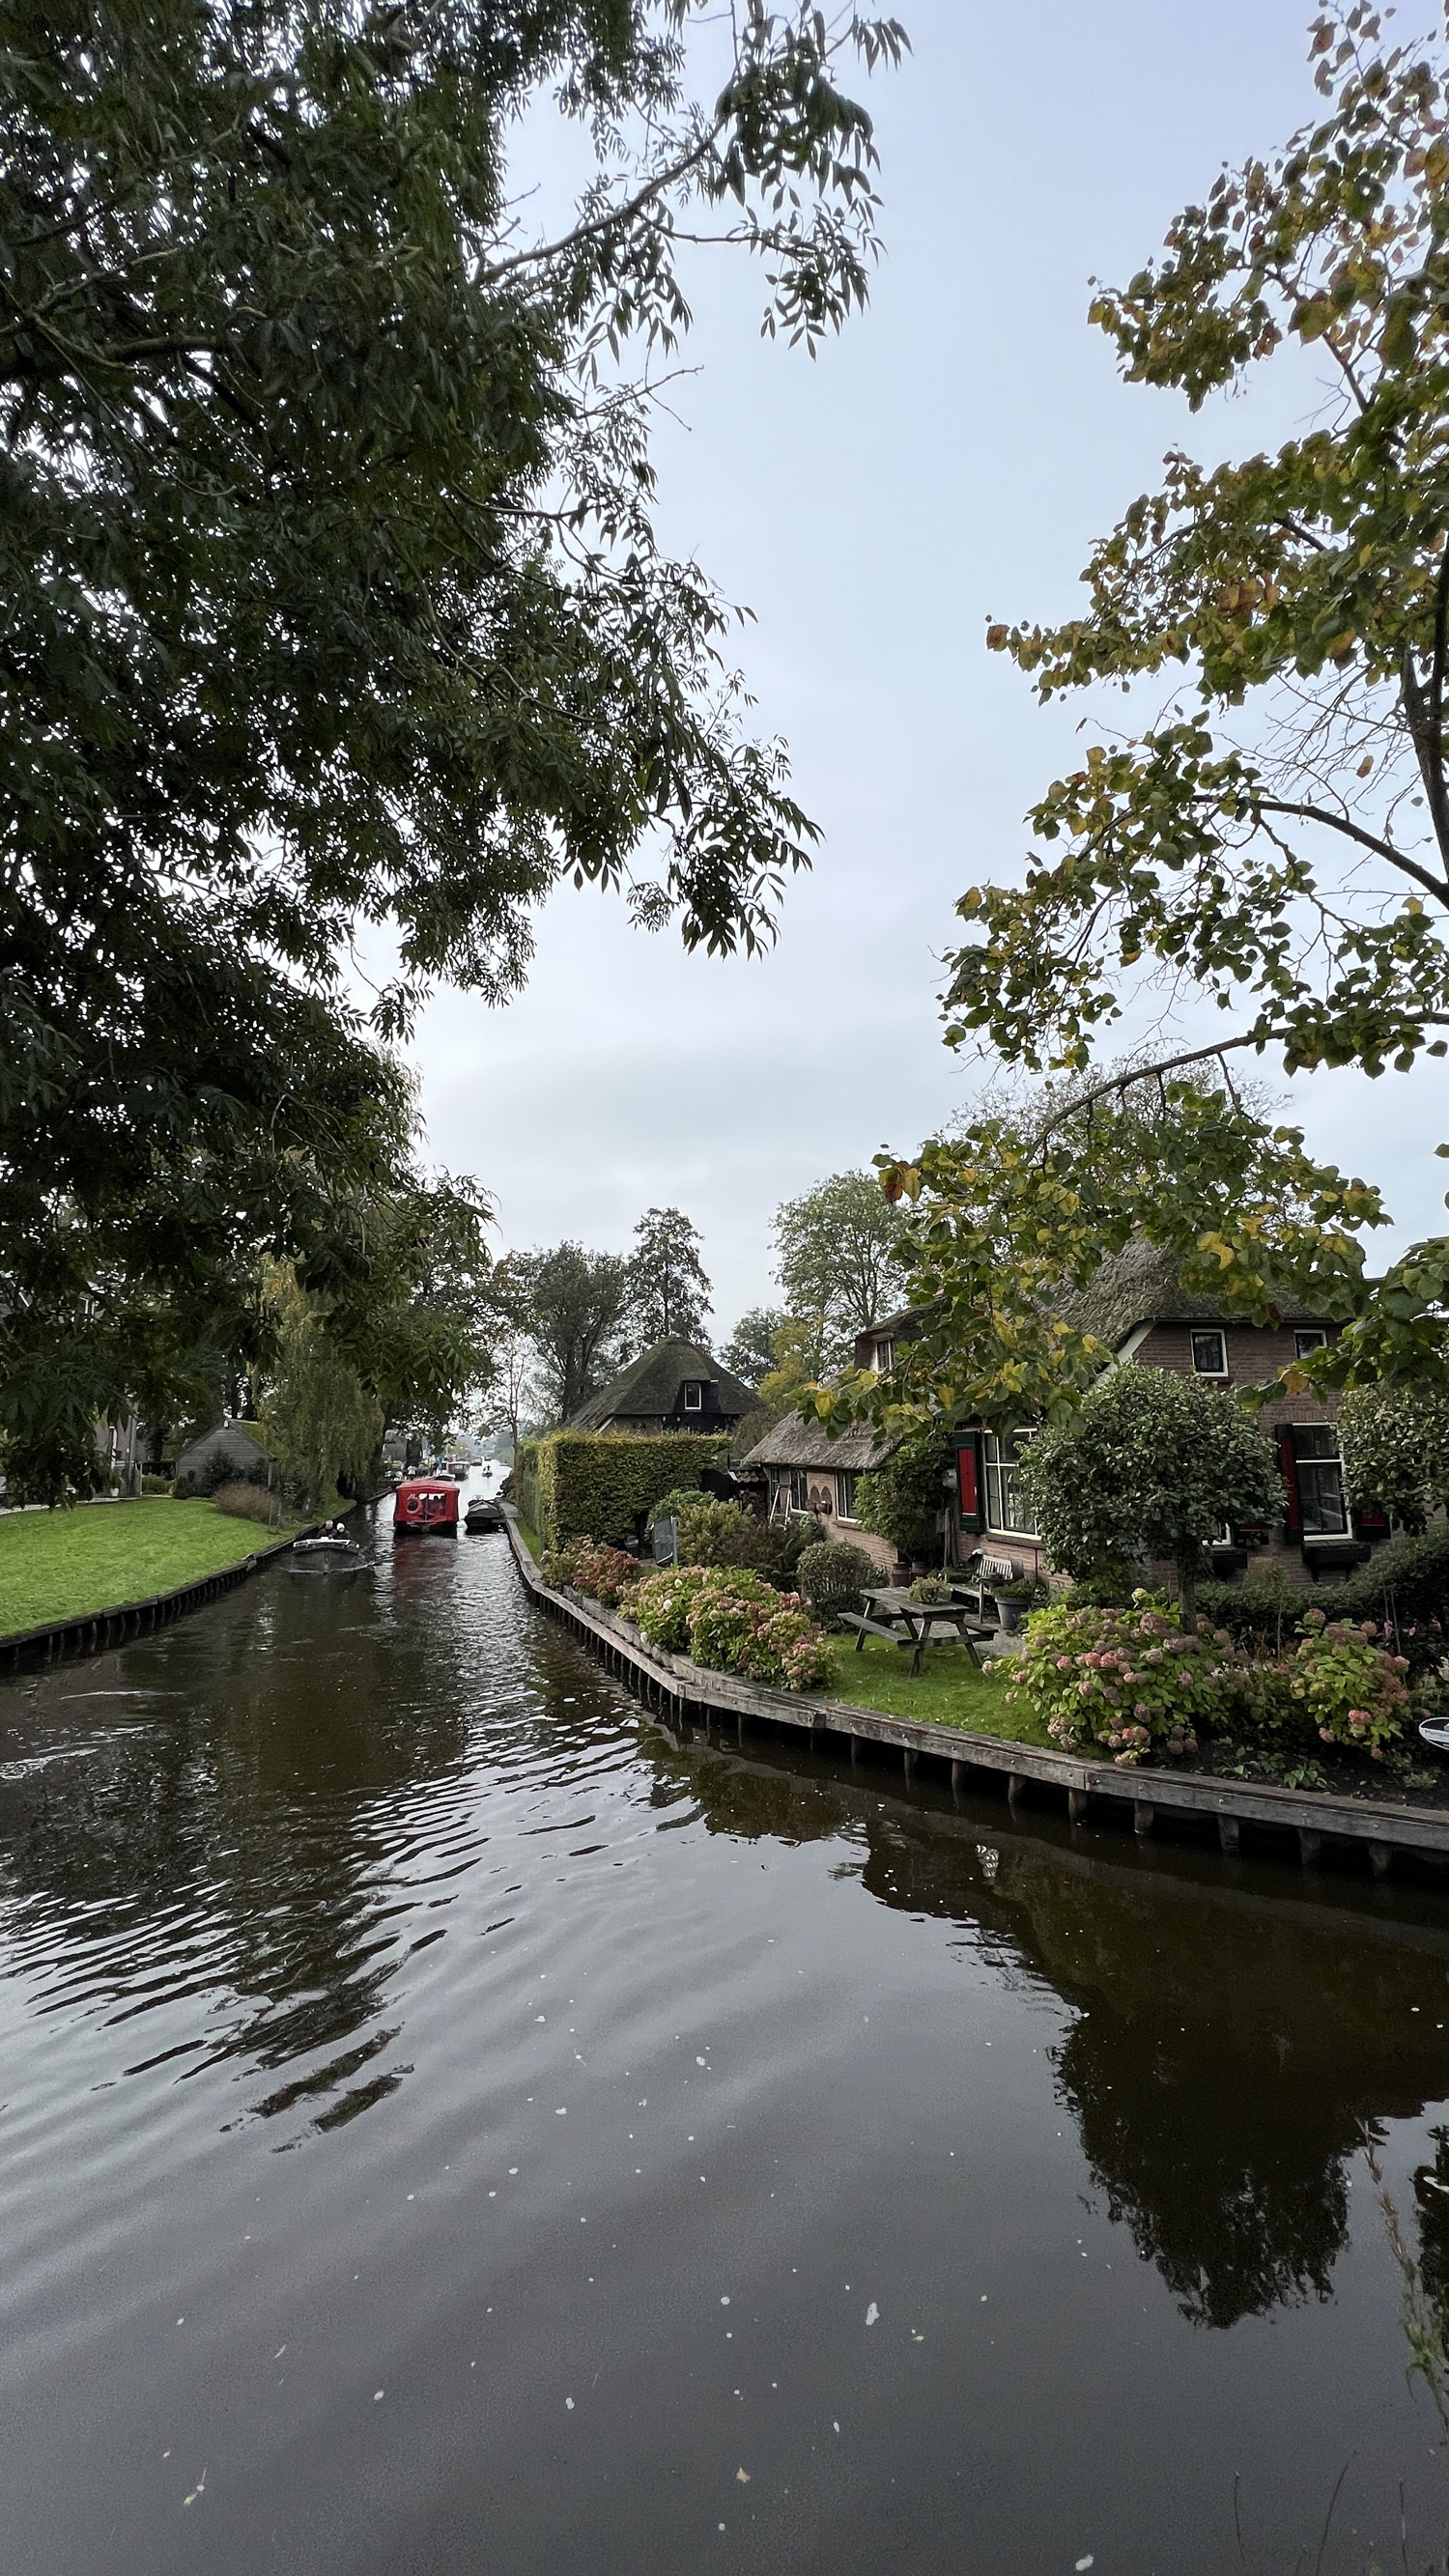 羊角村 Giethoorn，是个小村庄，它被称为“绿色威尼斯” 位于荷兰东北的威登自然保护区，可船游